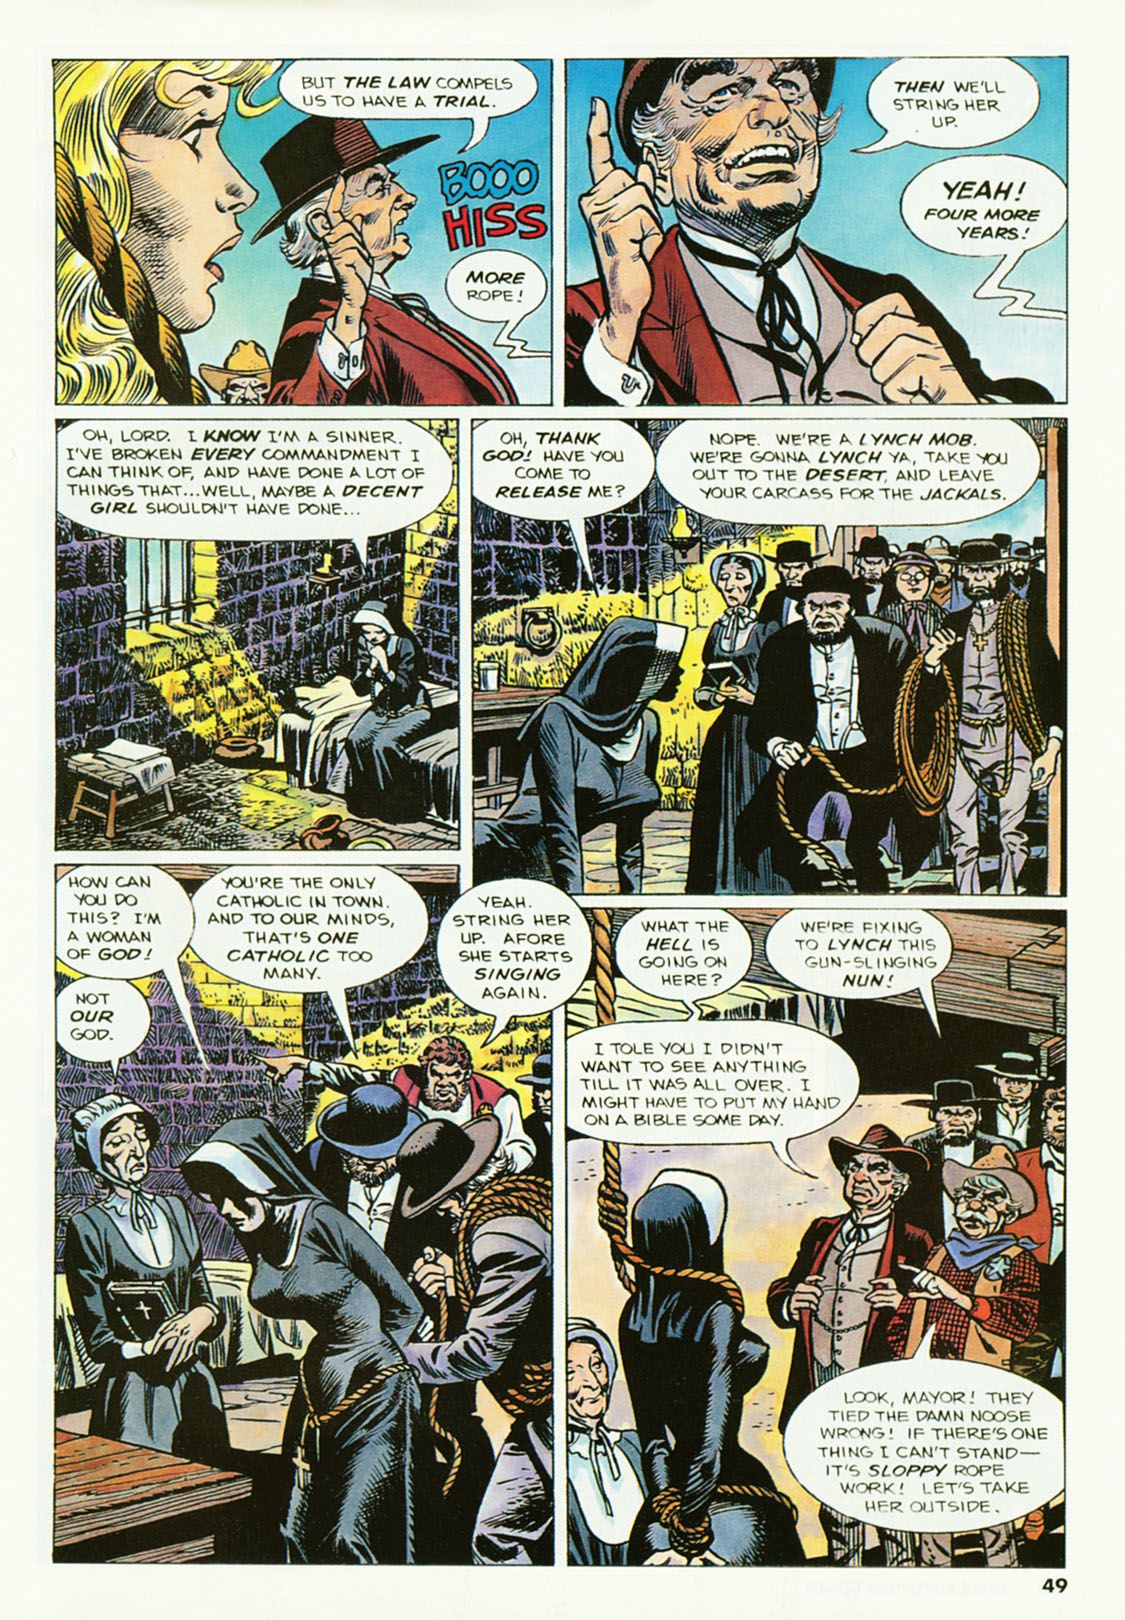 penthouse męskie przygody komiks #2 część 3